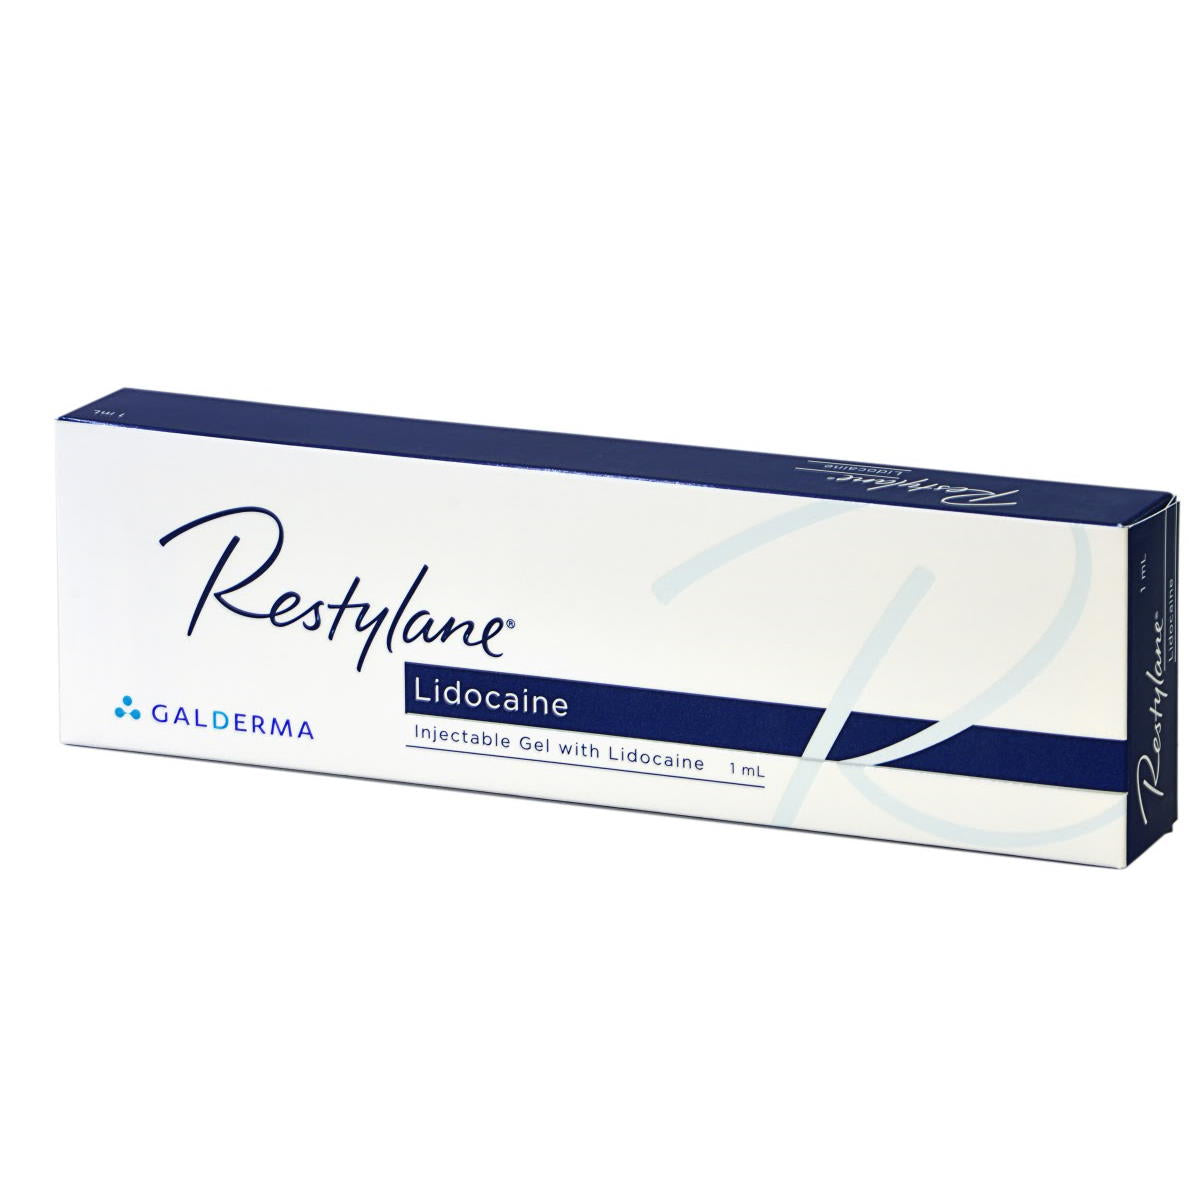 Restylane Lidocaine
Contiene 1 siringa da 1ml
Indicato per correggere rughe e pieghe del viso da moderate a profonde.